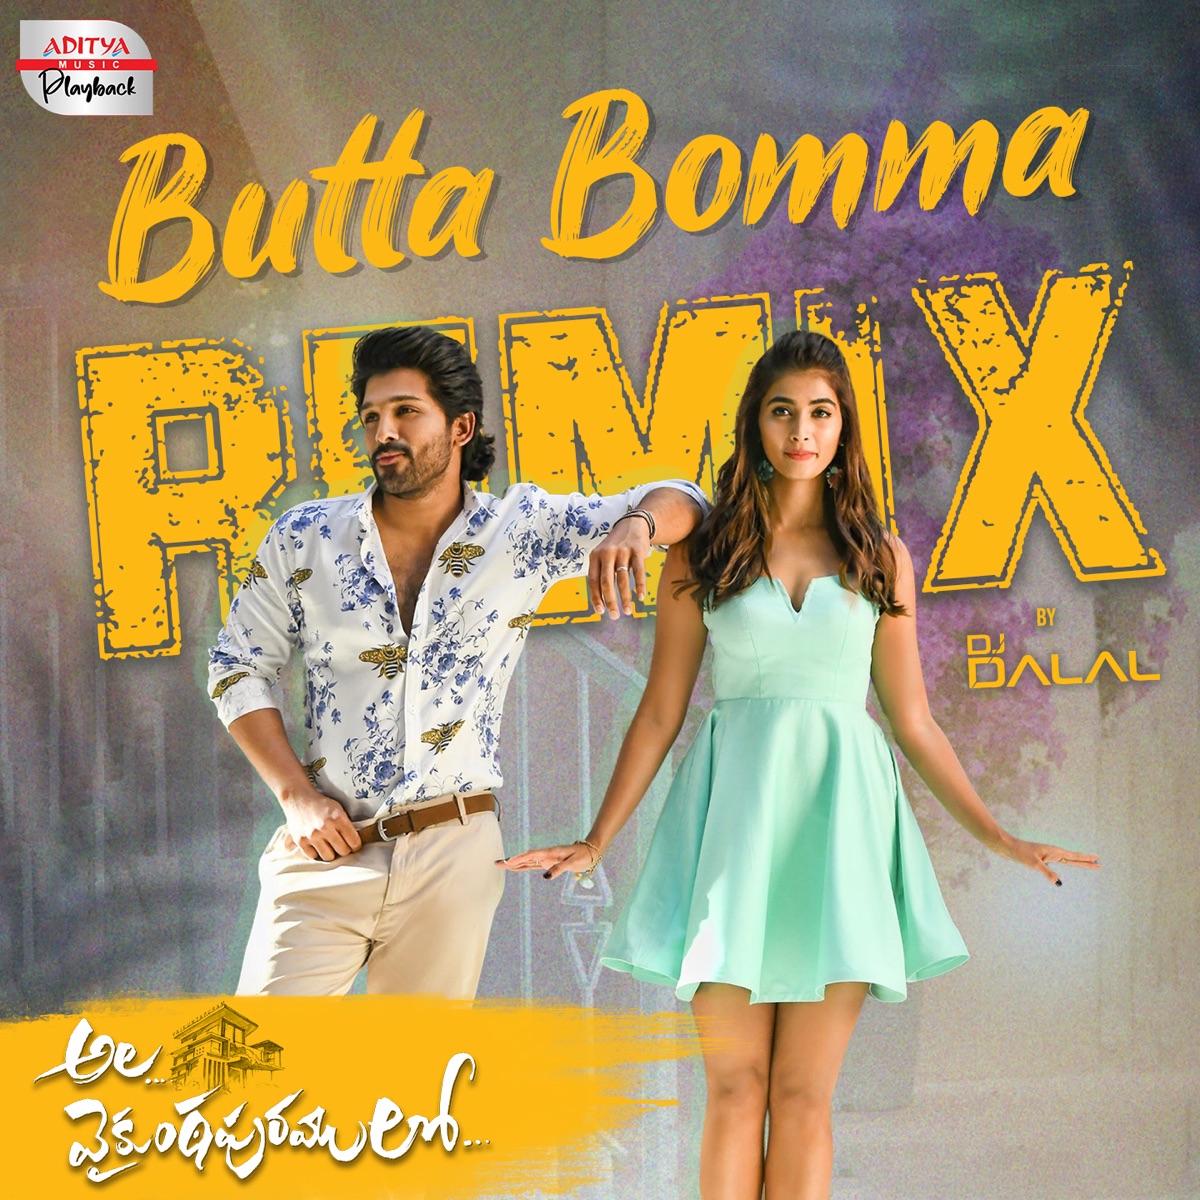 Arjun Das on 'Butta Bomma', his rising popularity and more - Telugu News -  IndiaGlitz.com